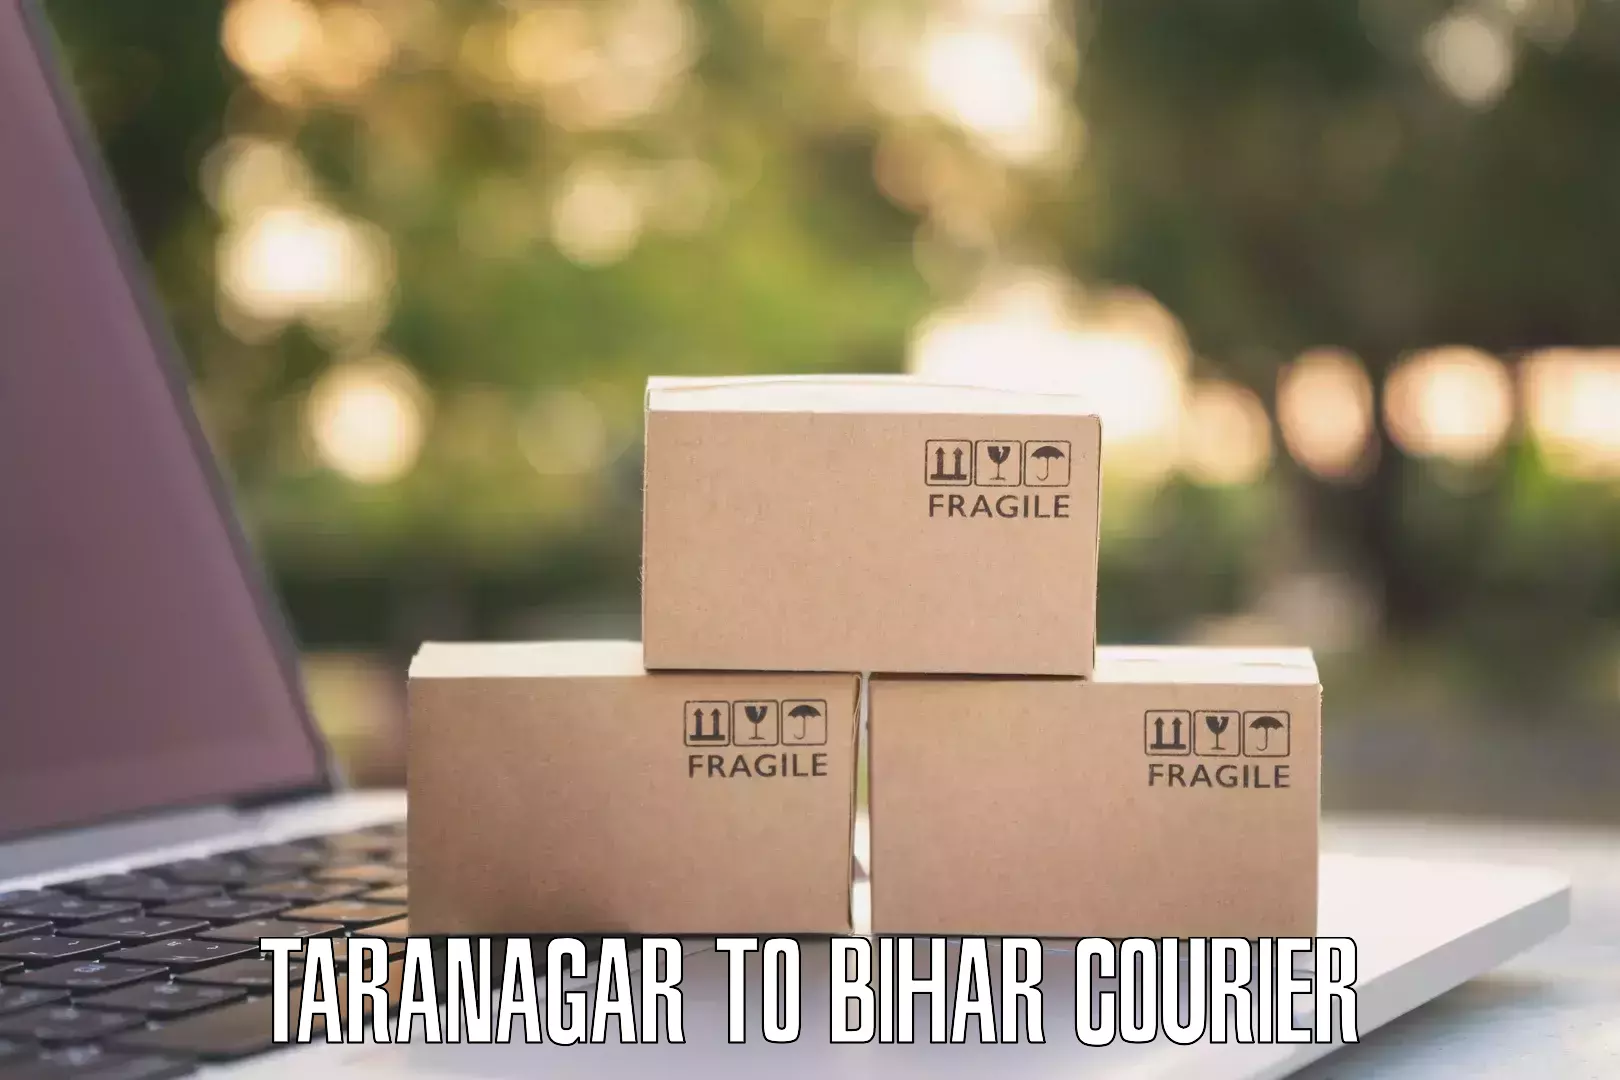 Premium courier services Taranagar to Jaynagar